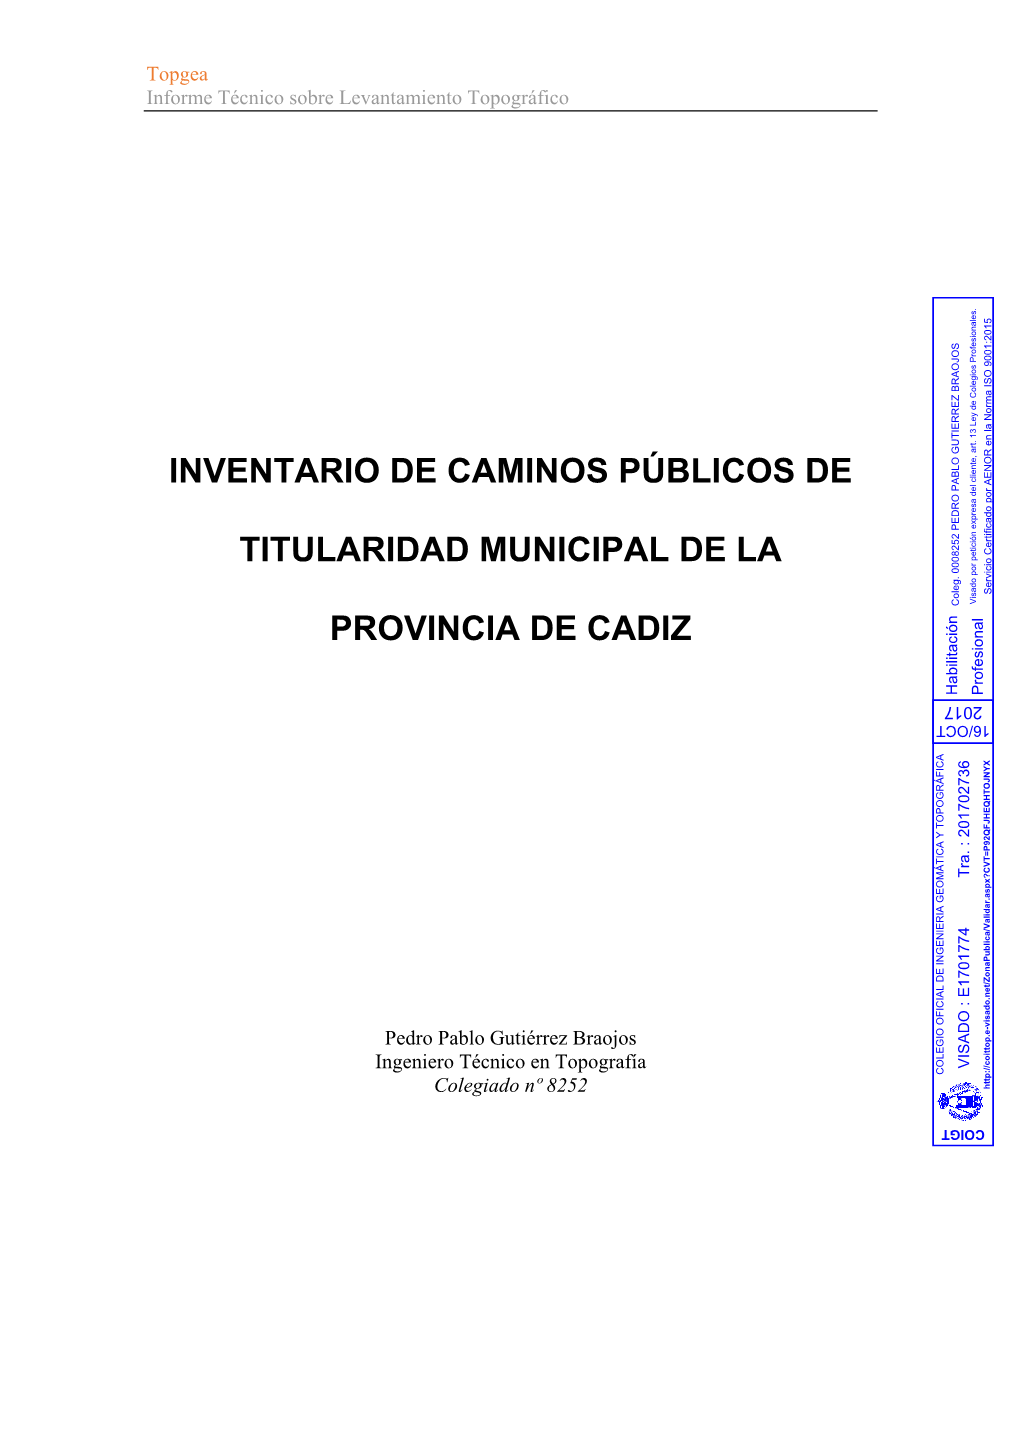 Inventario De Caminos Públicos De Titularidad Municipal De La Provincia